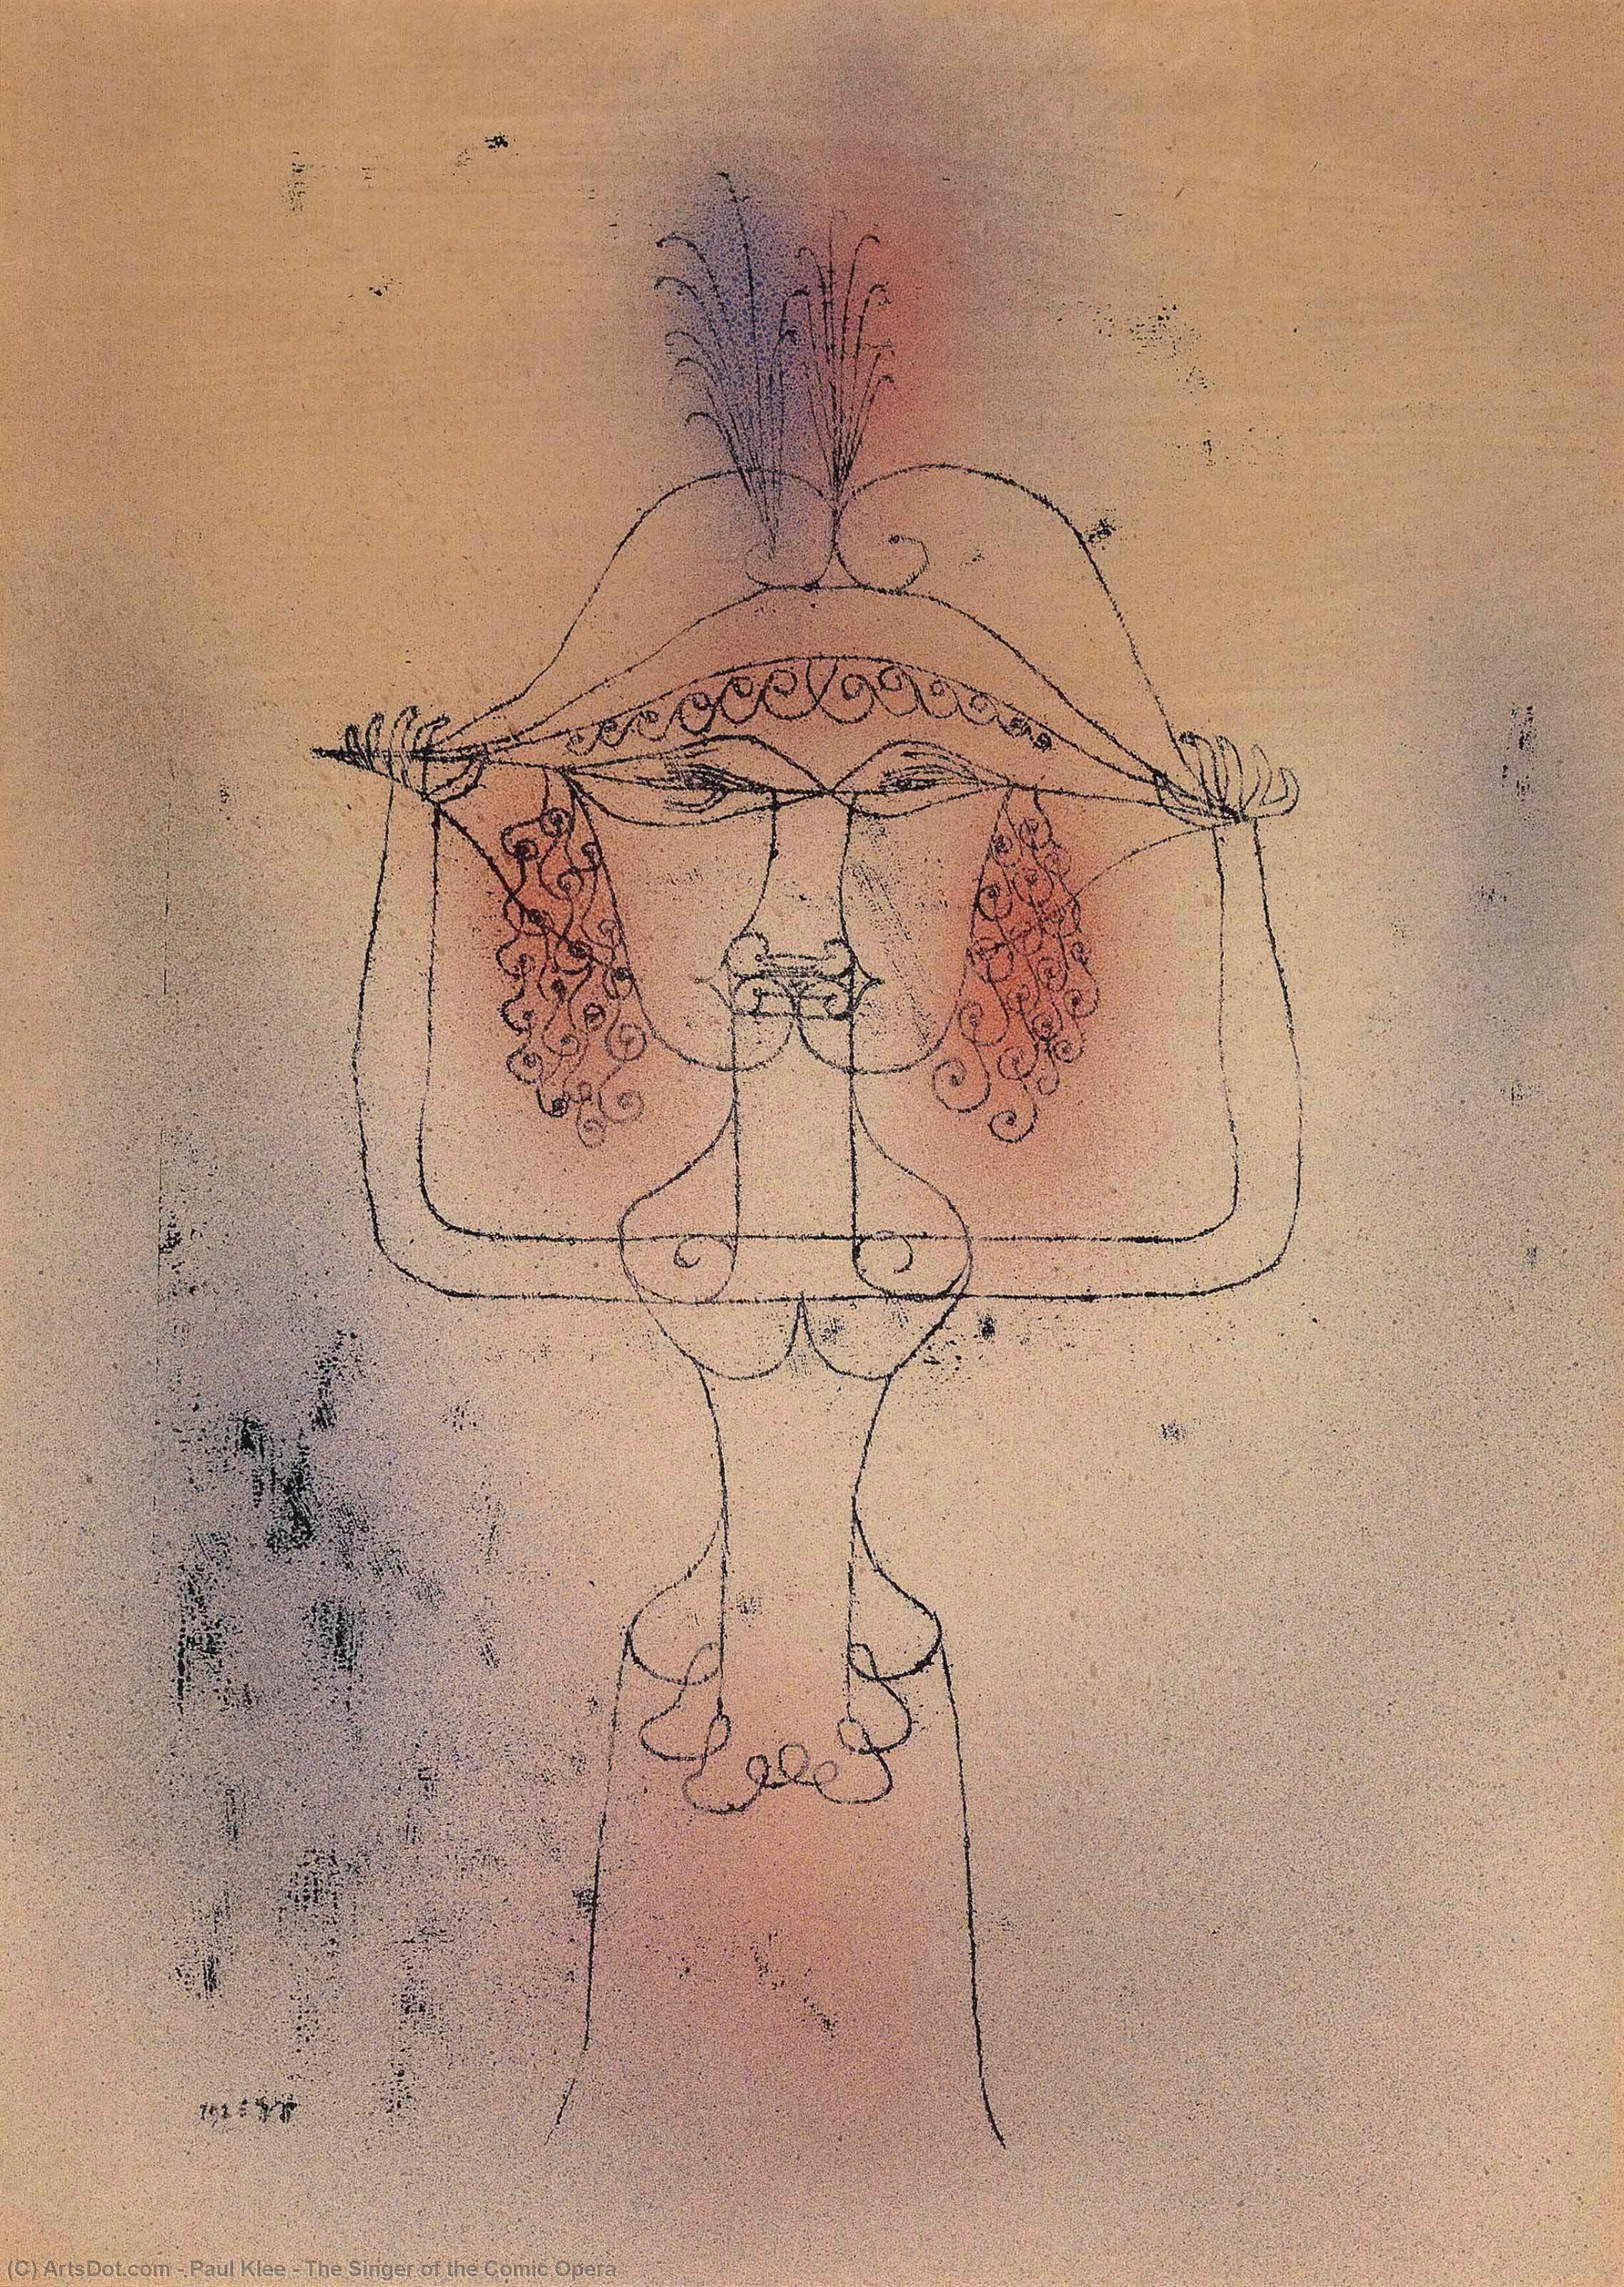 Wikioo.org - Bách khoa toàn thư về mỹ thuật - Vẽ tranh, Tác phẩm nghệ thuật Paul Klee - The Singer of the Comic Opera